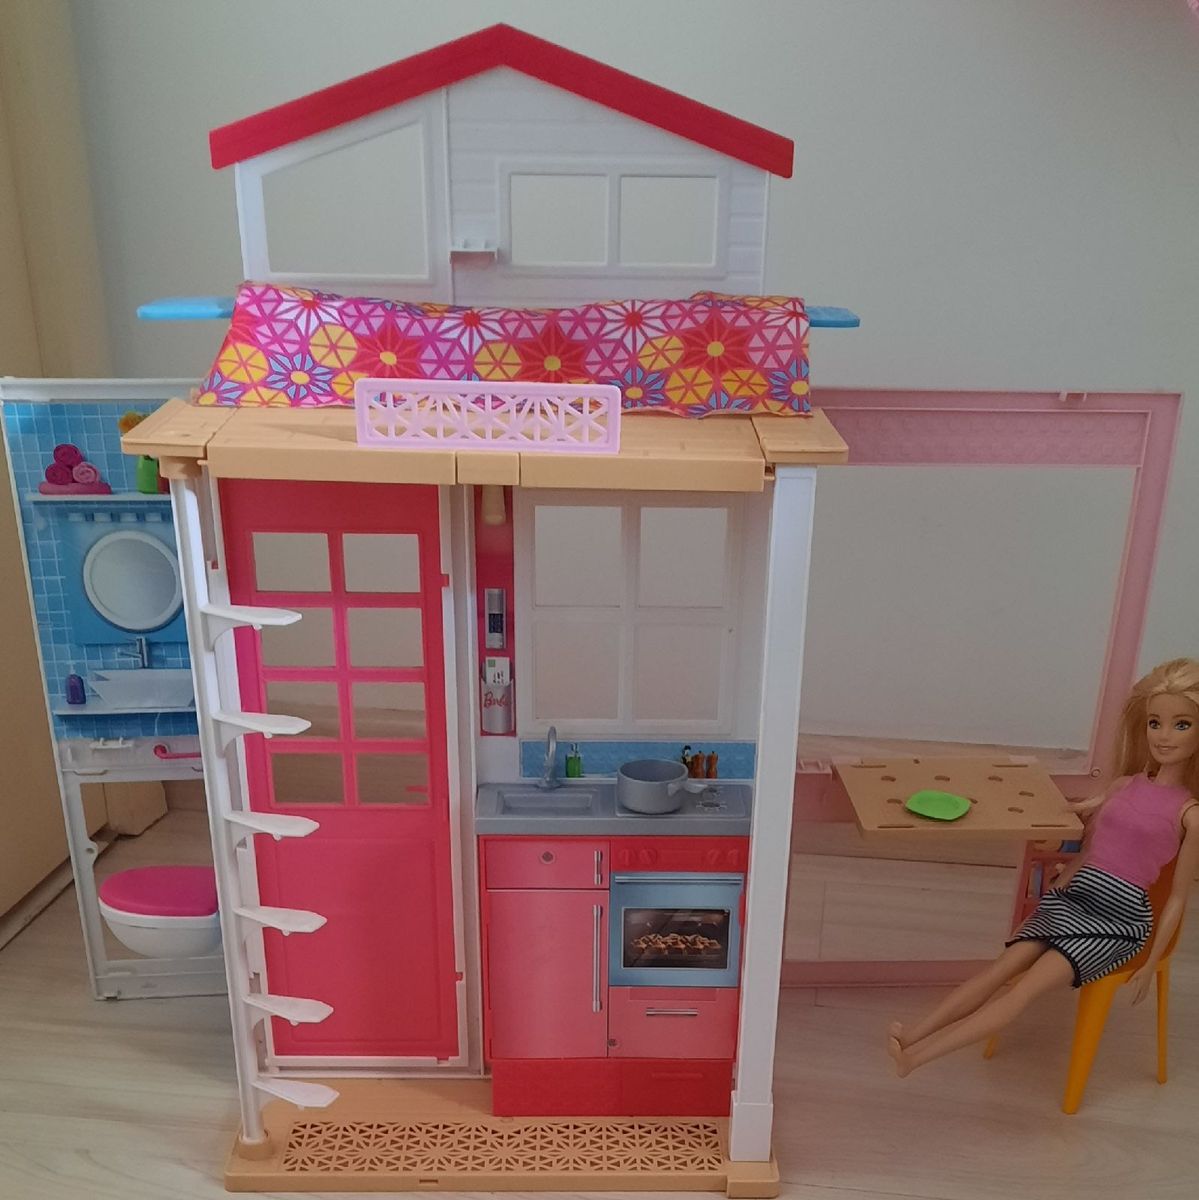 Casa da Barbie Barata, Brinquedo Barbie Usado 79401956